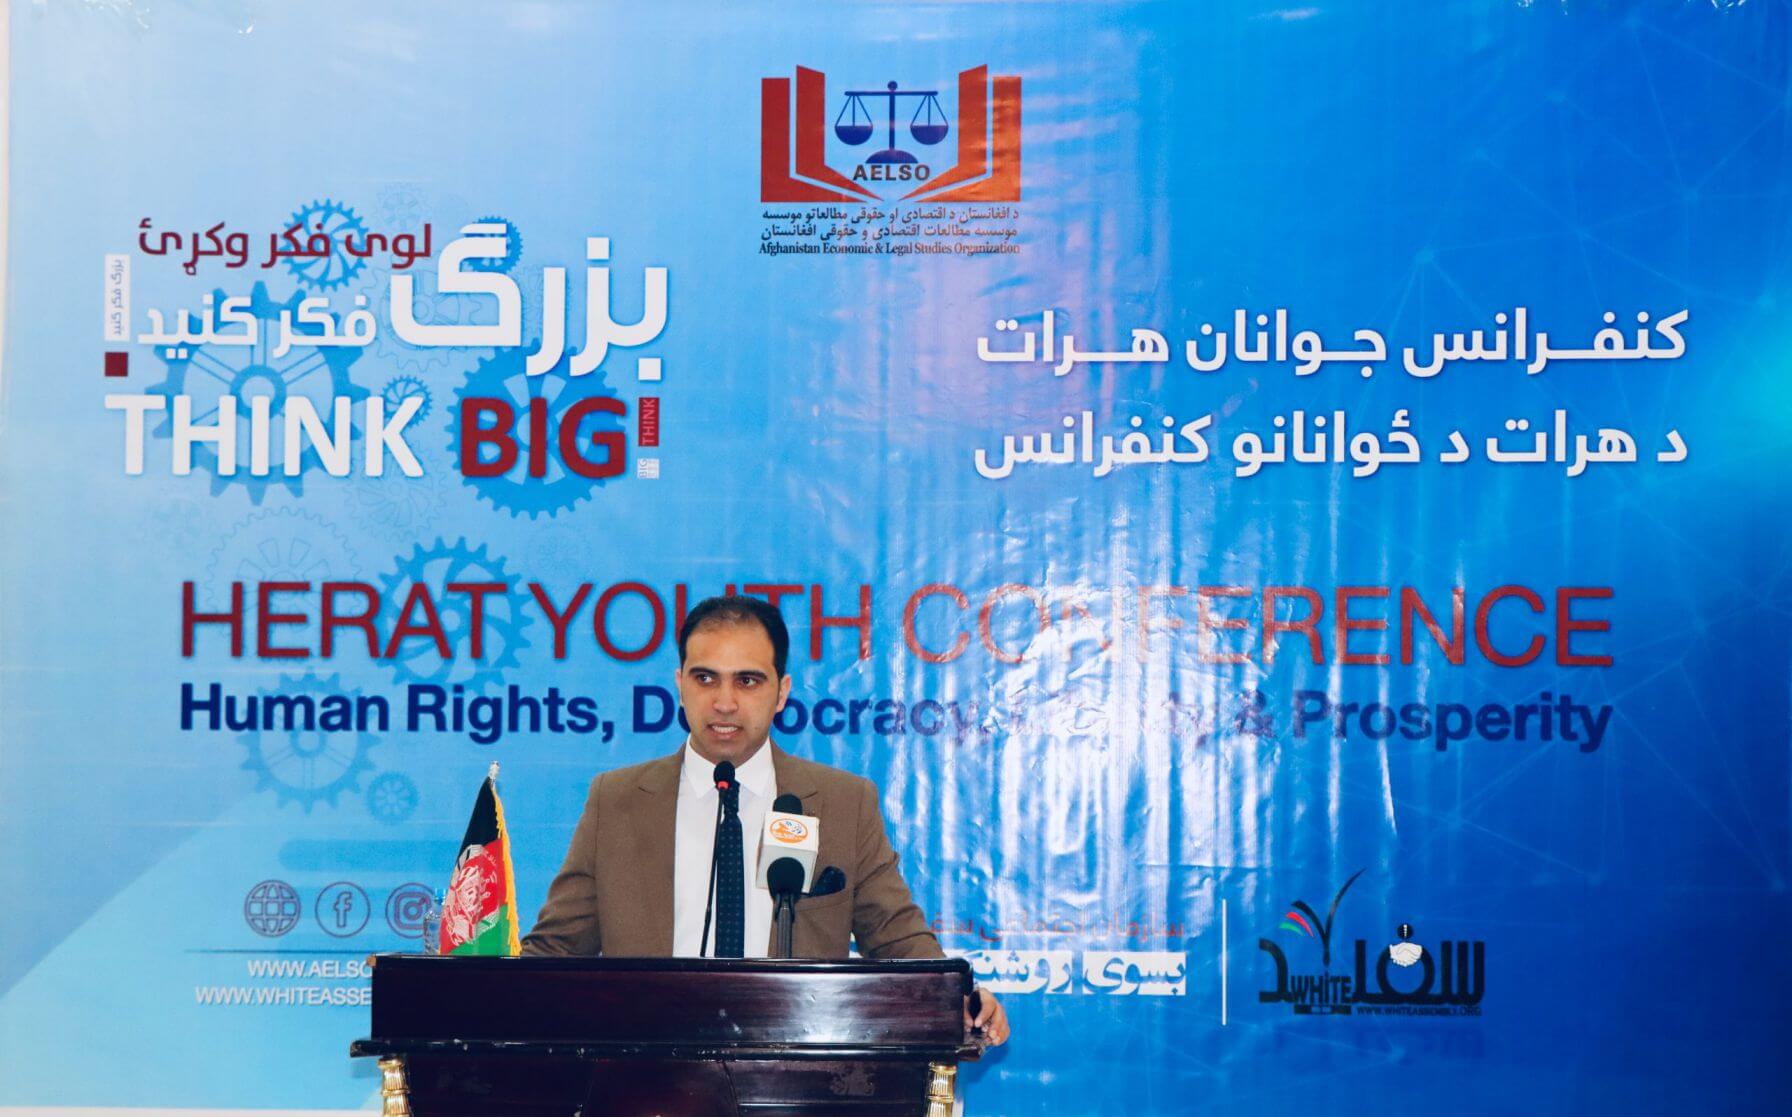 محترم محمد خالد رامزی رئیس اجرائیه موسسه ایلسو در جریان سخنرانی و افتتاح این کنفرانس.